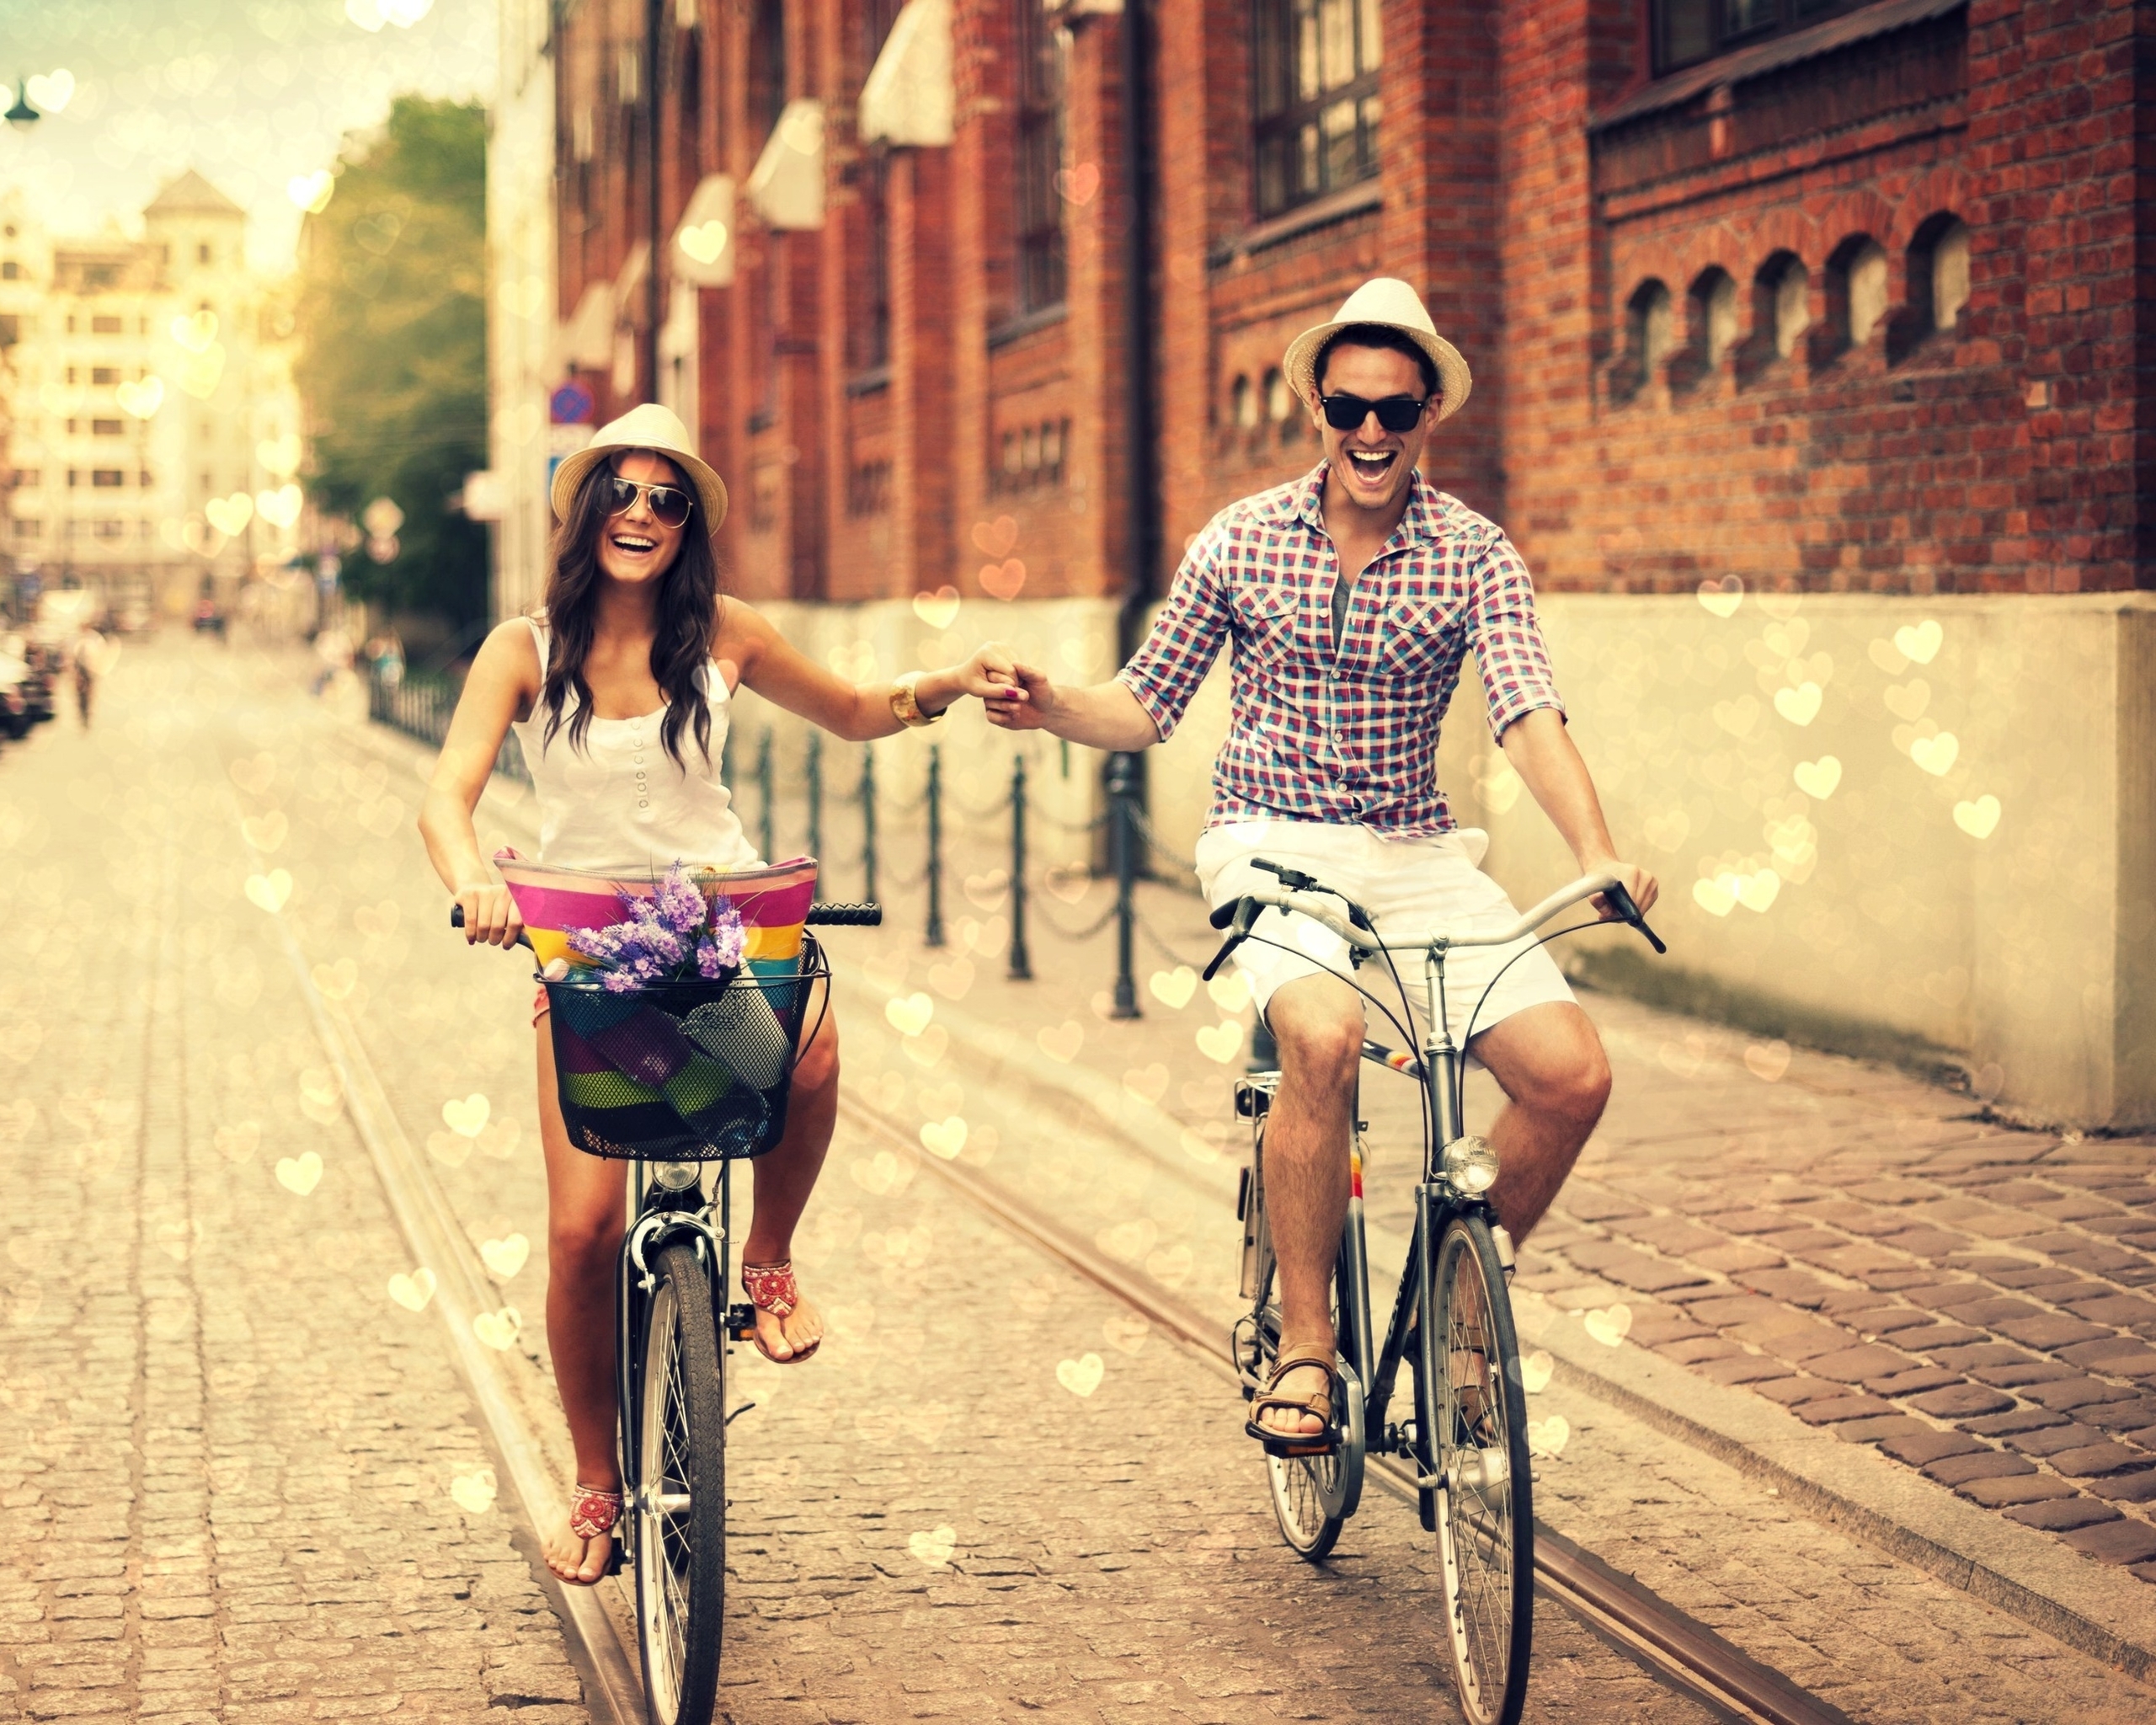 Image: Guy, girl, journey, bicycle, drive, sidewalk, walkway, building